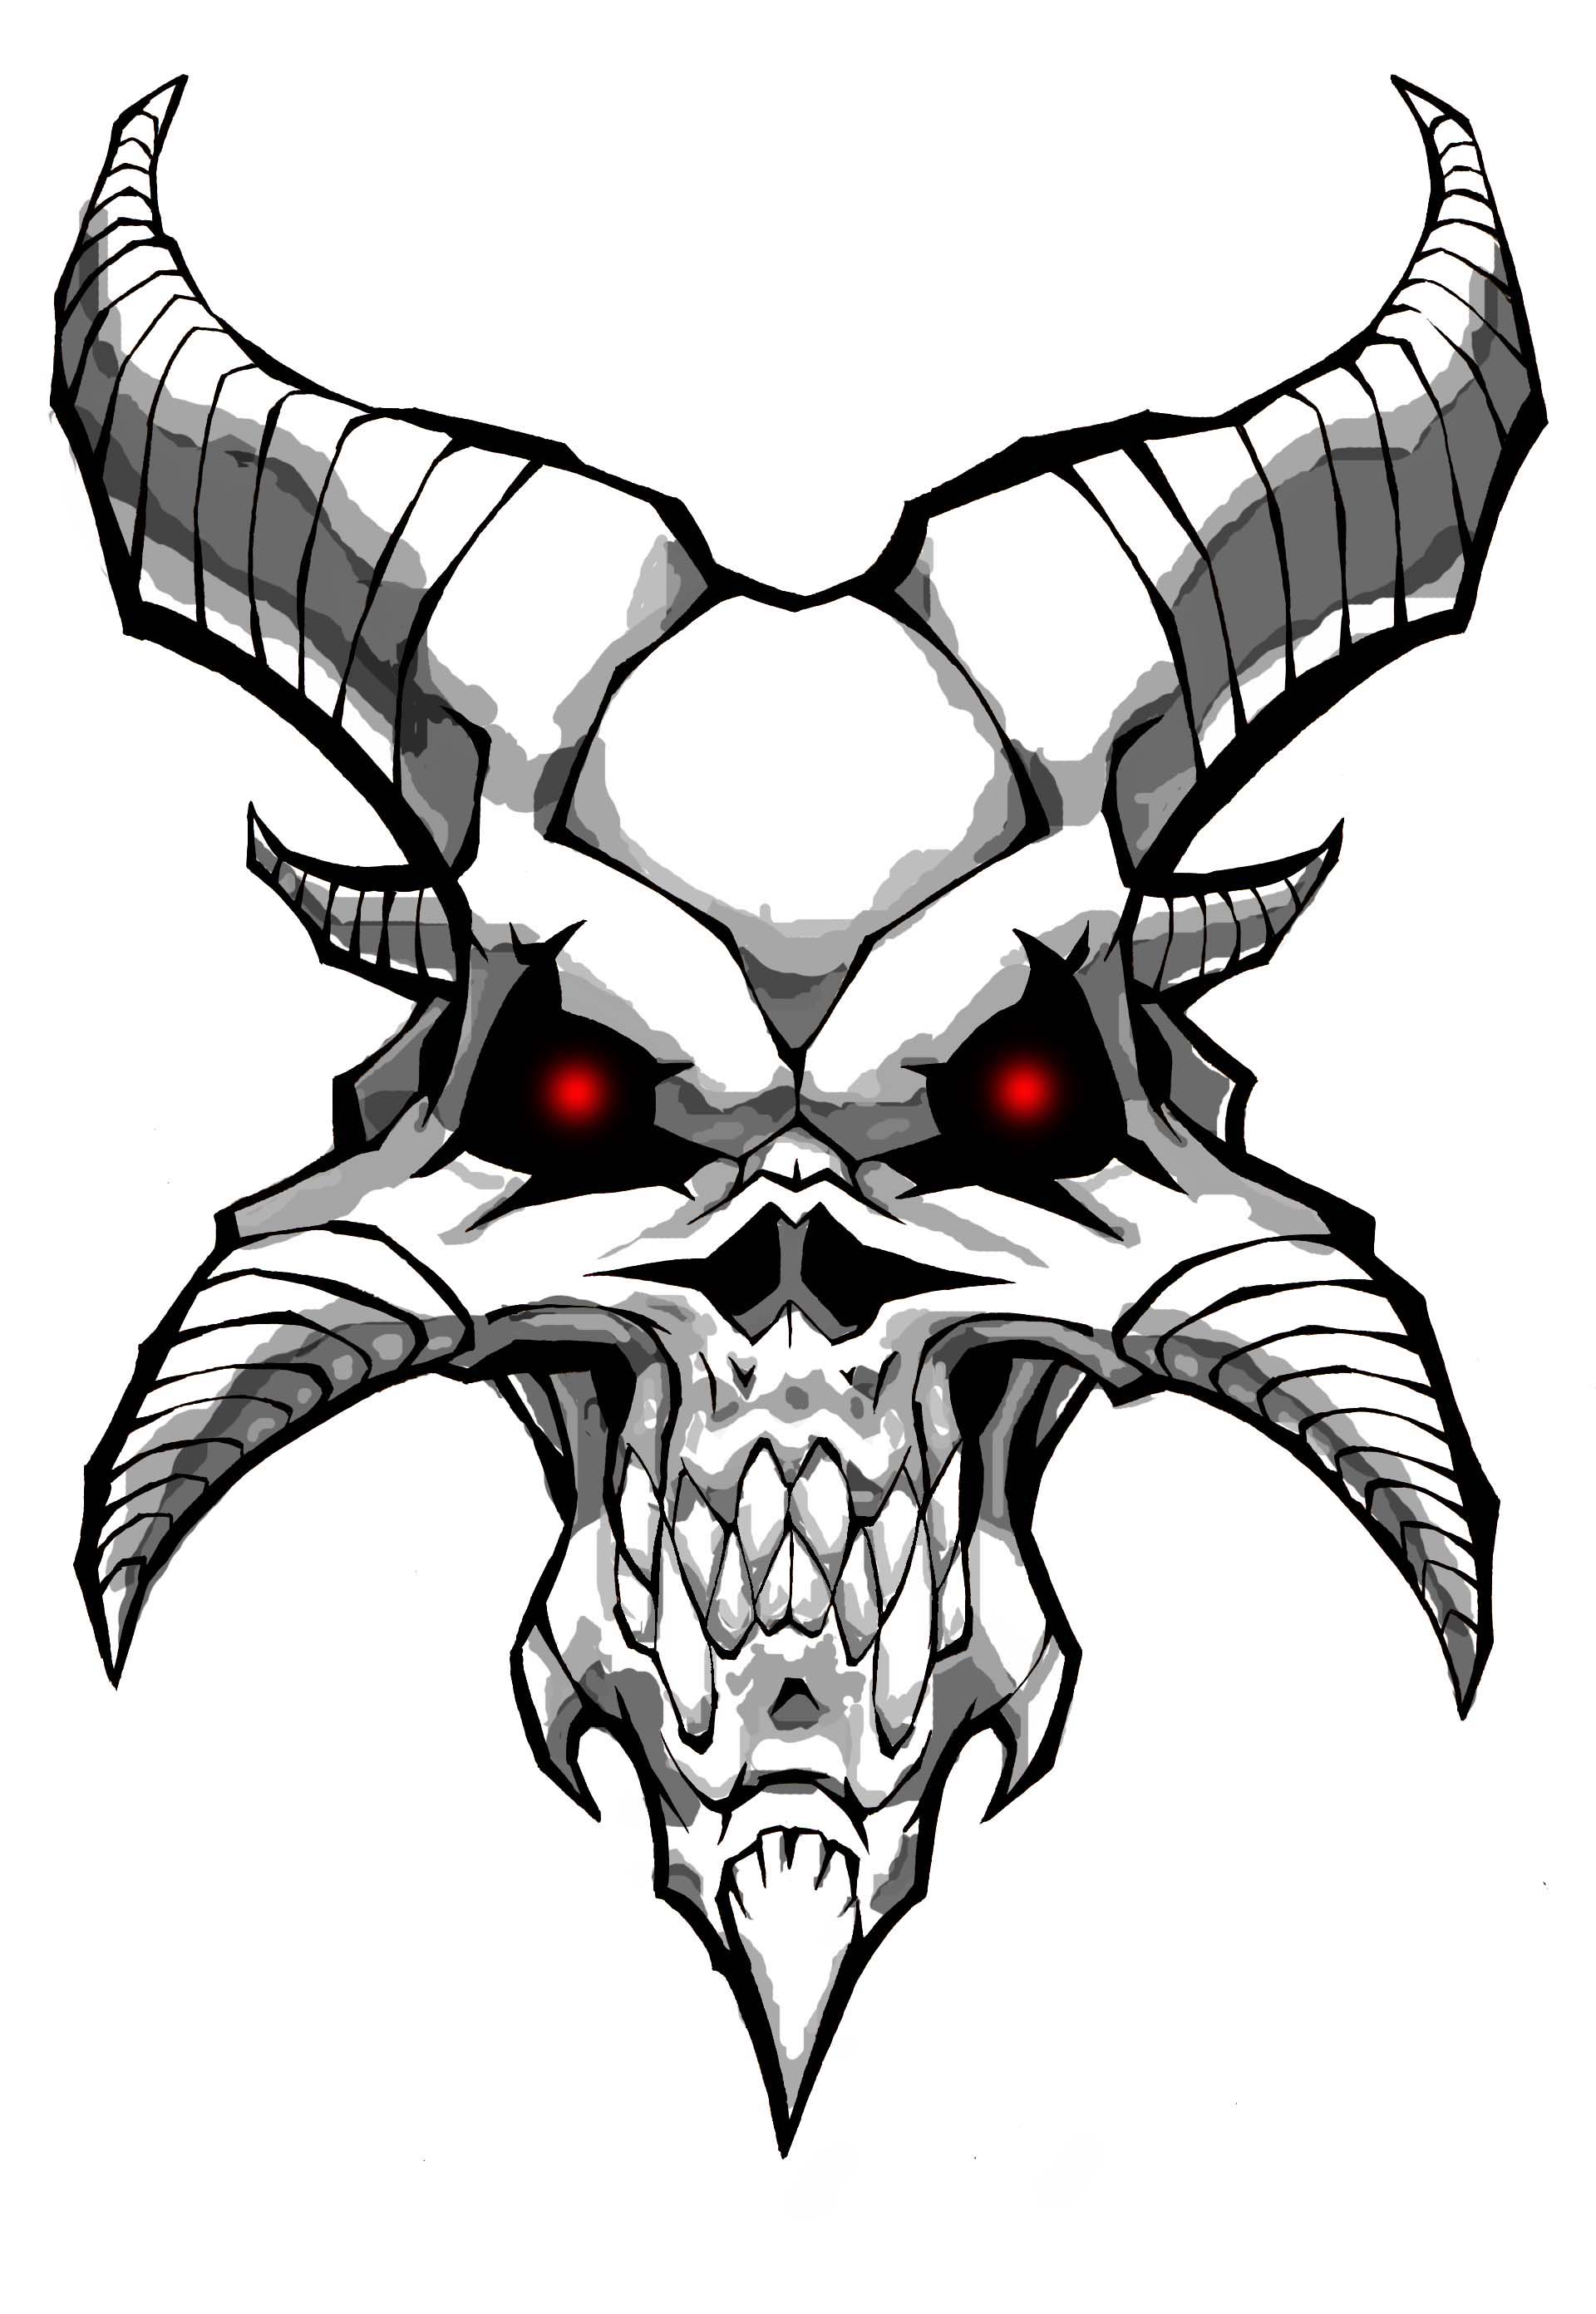 Demon Skull by williamsquid on DeviantArt